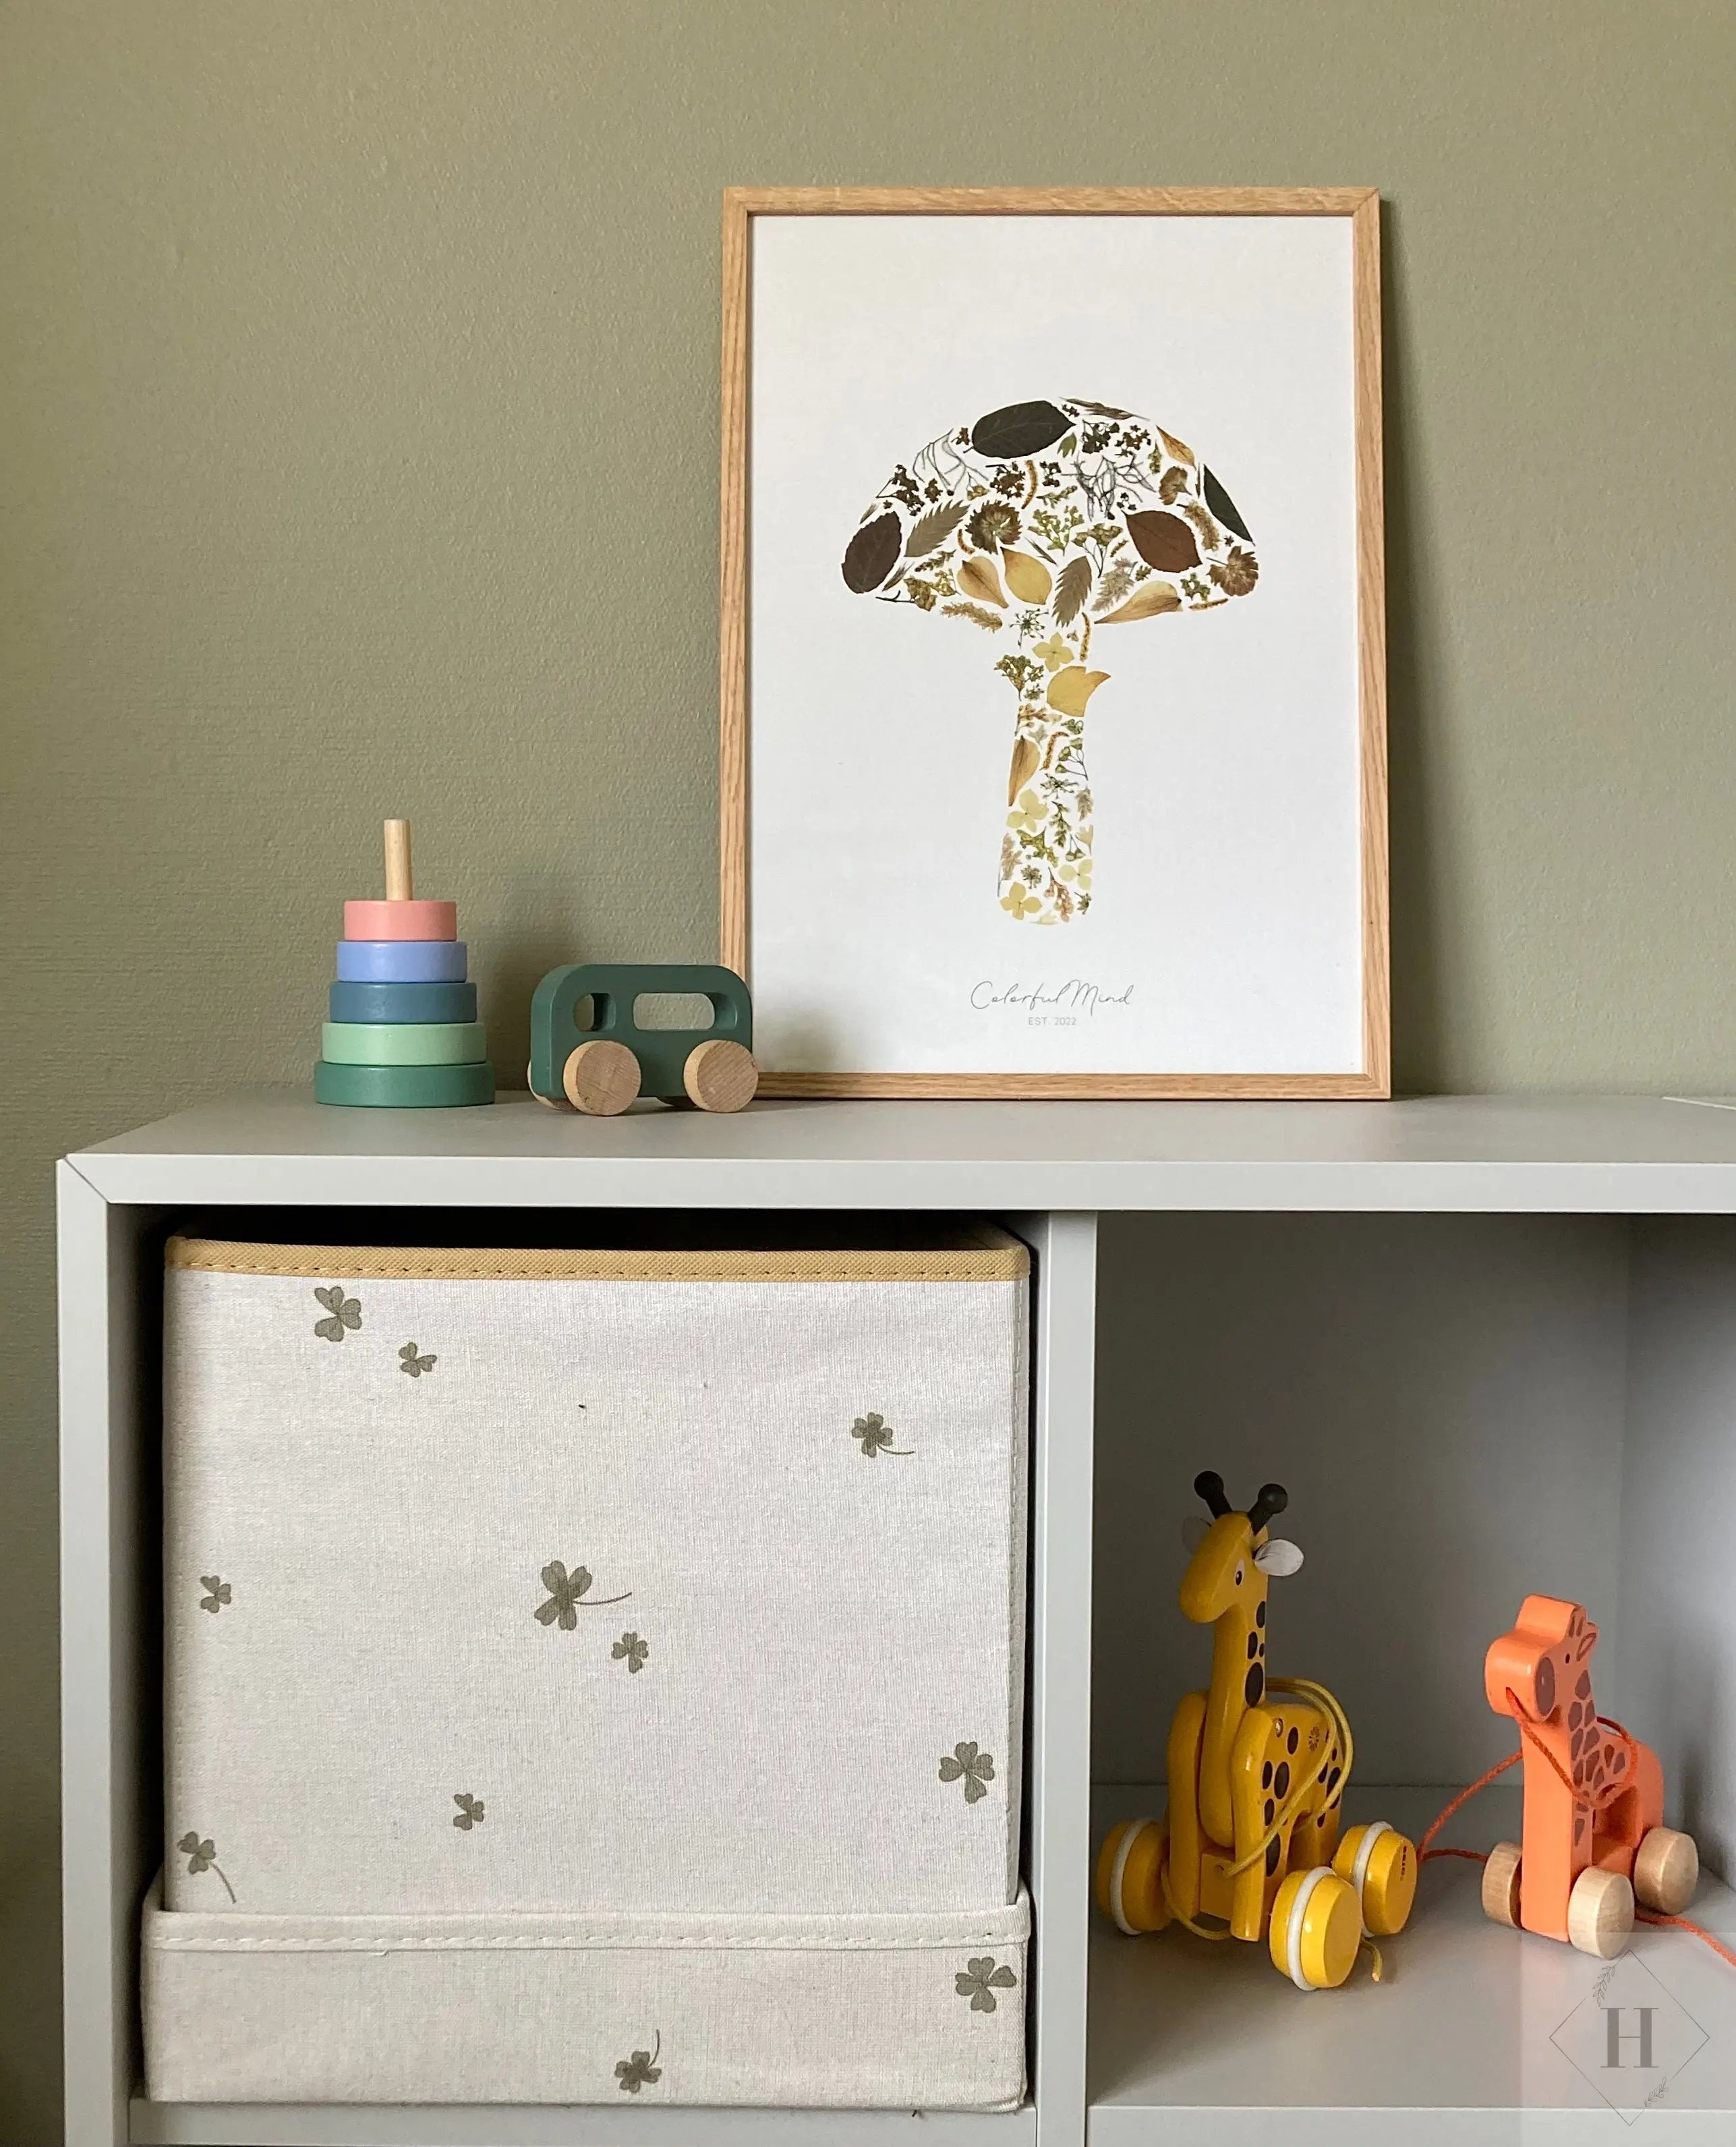 Kunstprint - Mushroom Flowers Colorful mind